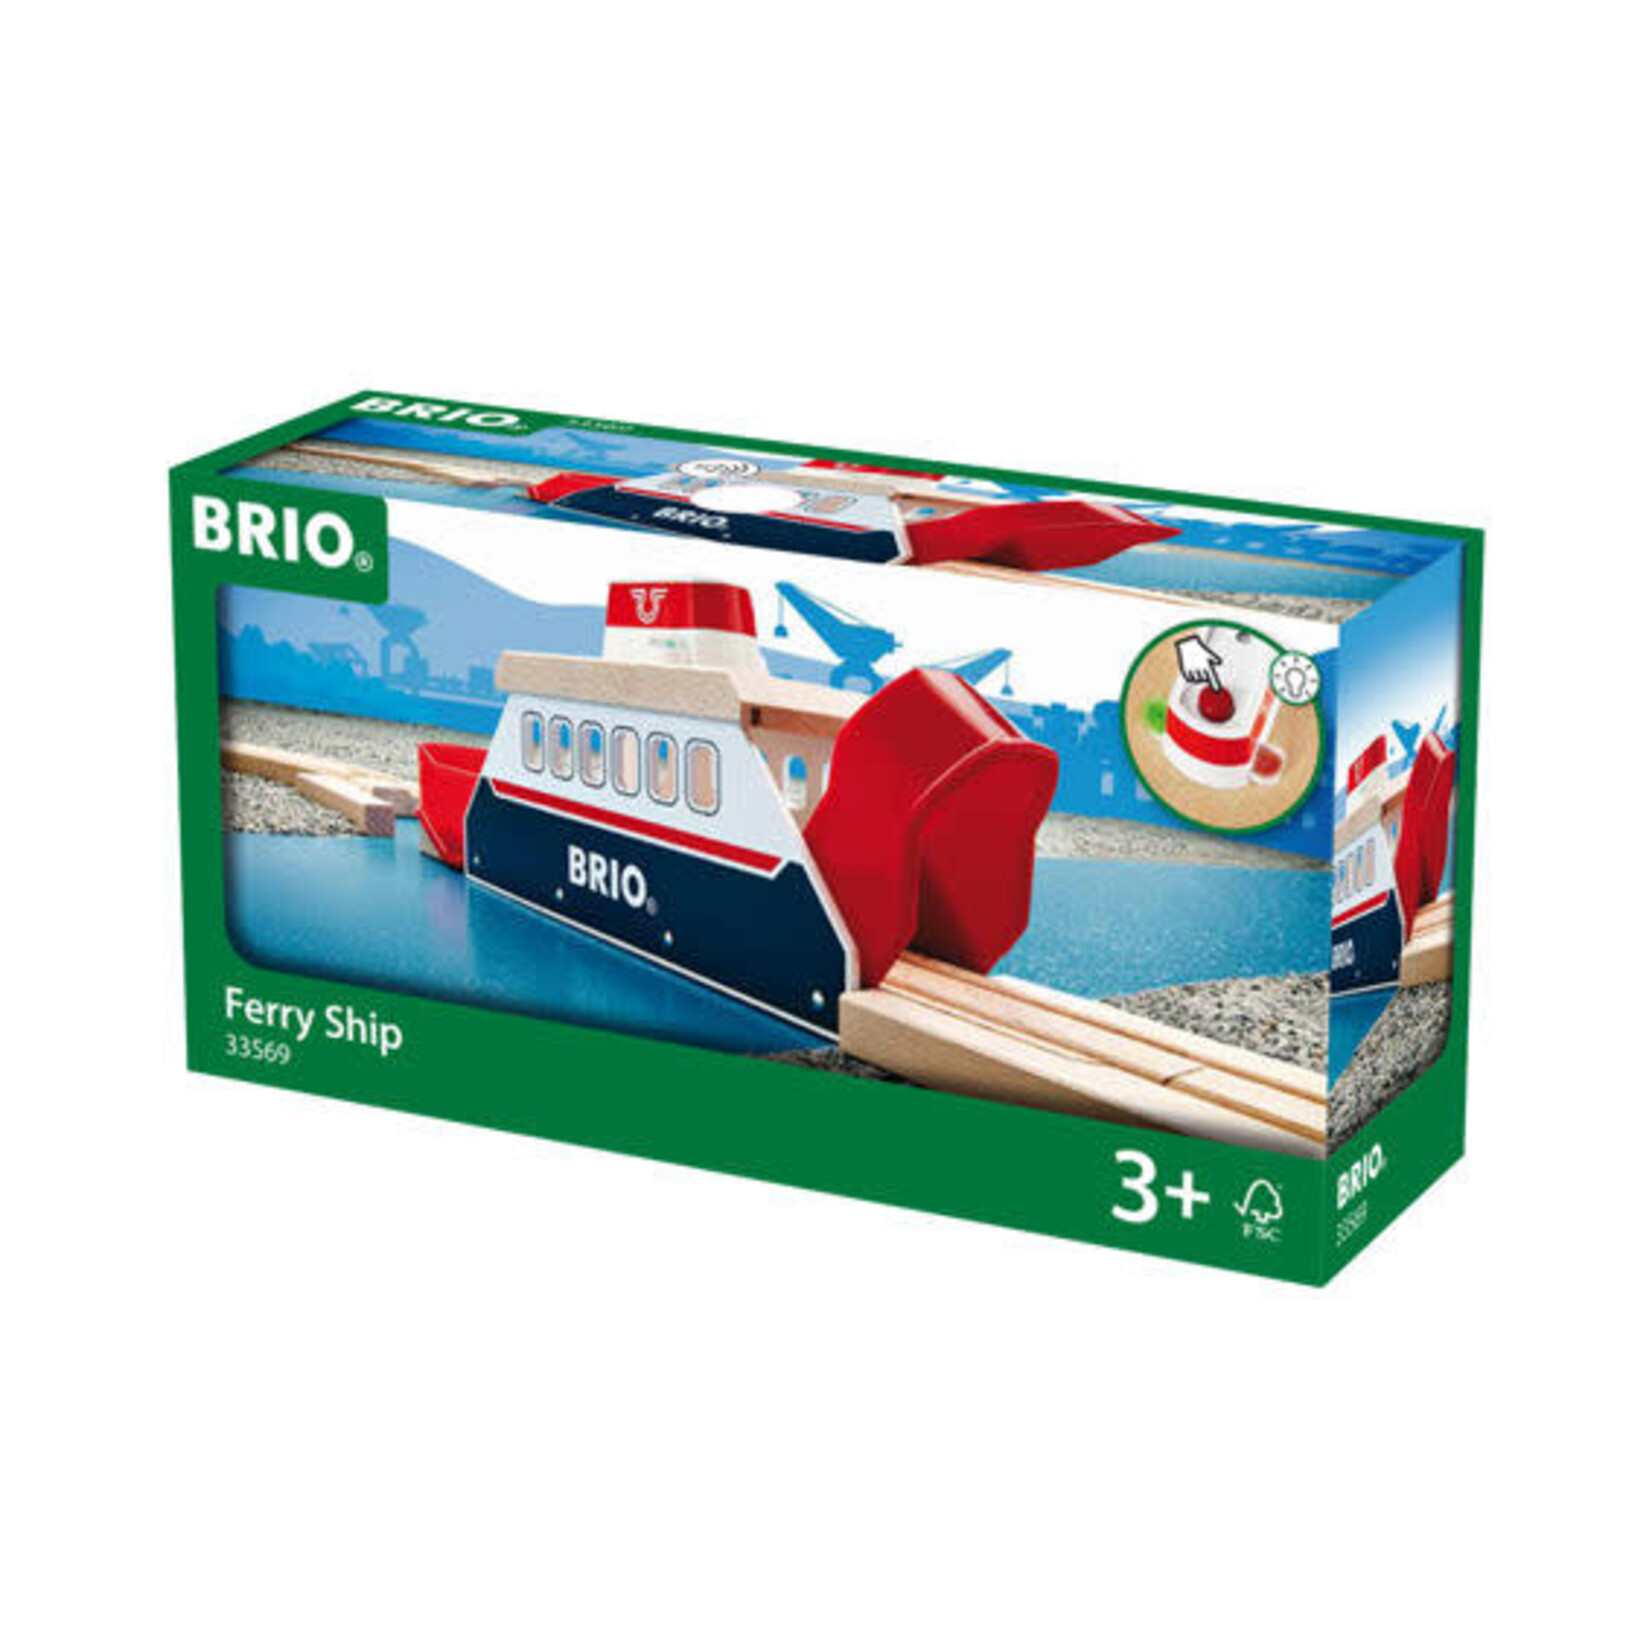 Brio Ferry